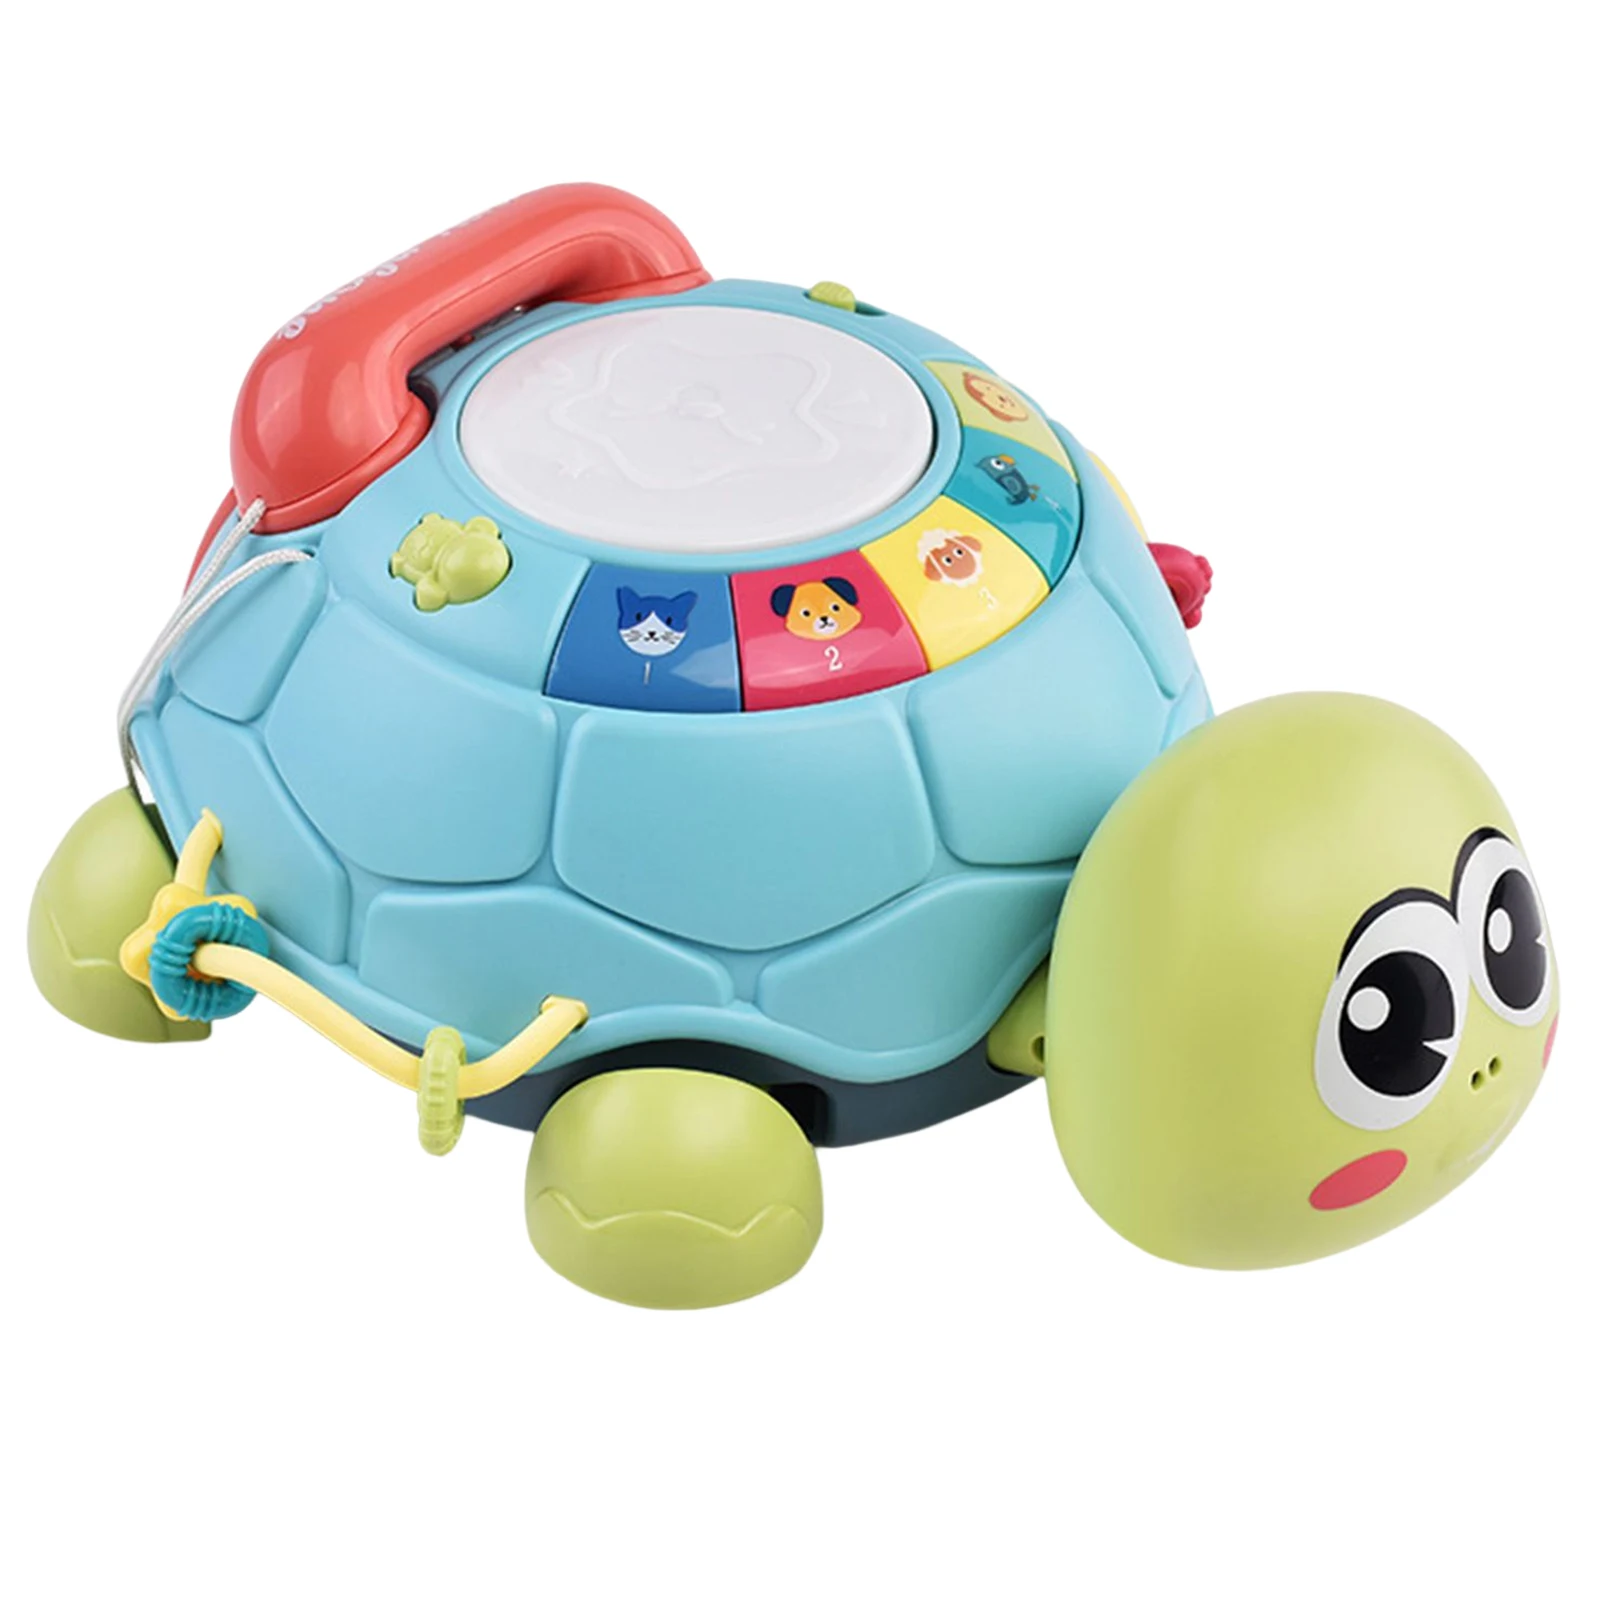 Детские музыкальные игрушки черепахи, координация глаз и познавательные способности, подарок на Рождество, день рождения, новый год